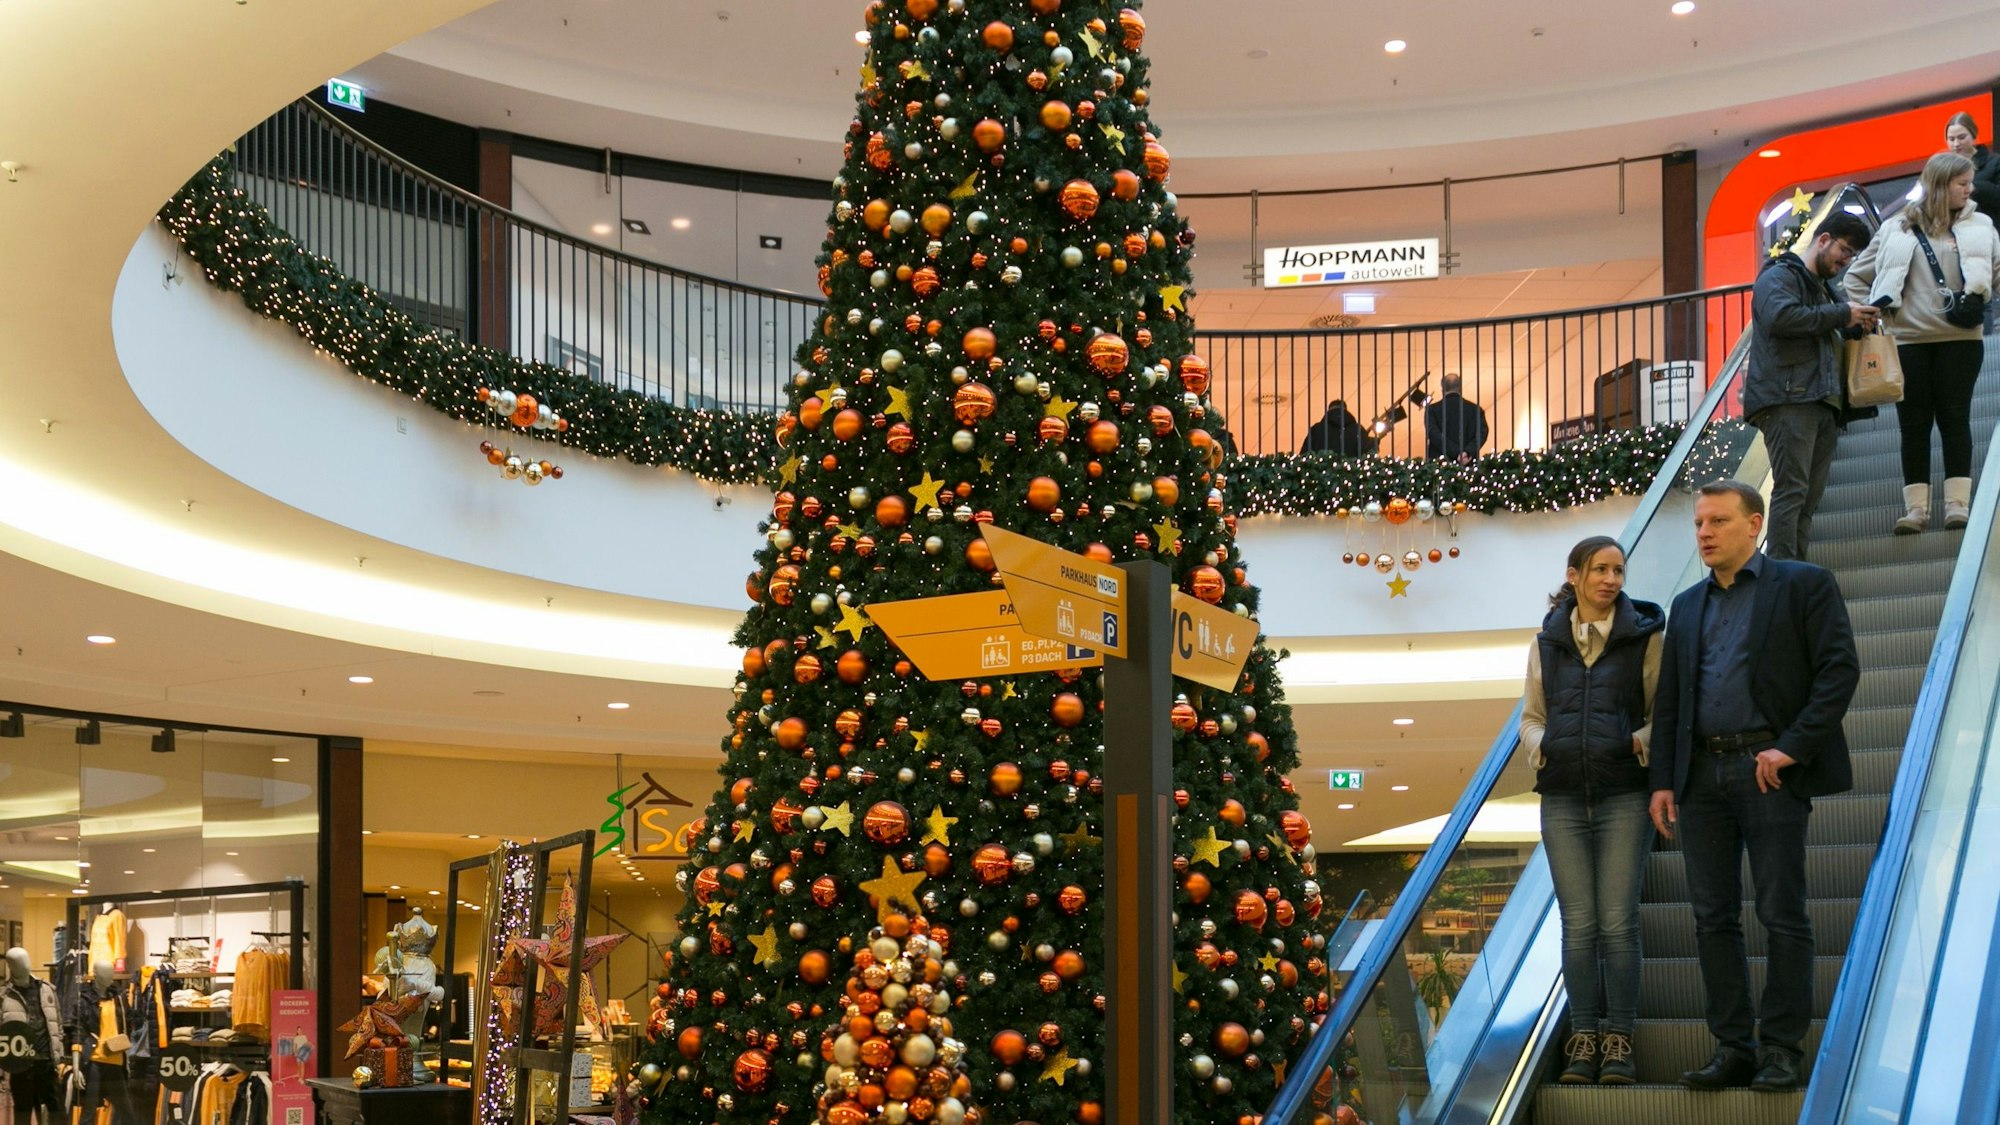 Das „Forum“ in Gummersbach ist im Weihnachtsgeschäft ein beliebtes Shoppingziel, rund 80 Läden und Dienstleister warten dort auf Kundschaft. Centermanager Klaus Kricks ist mit den Umsätzen dort zufrieden. Unser Bild zeigt den großen Weihnachtsbaum.